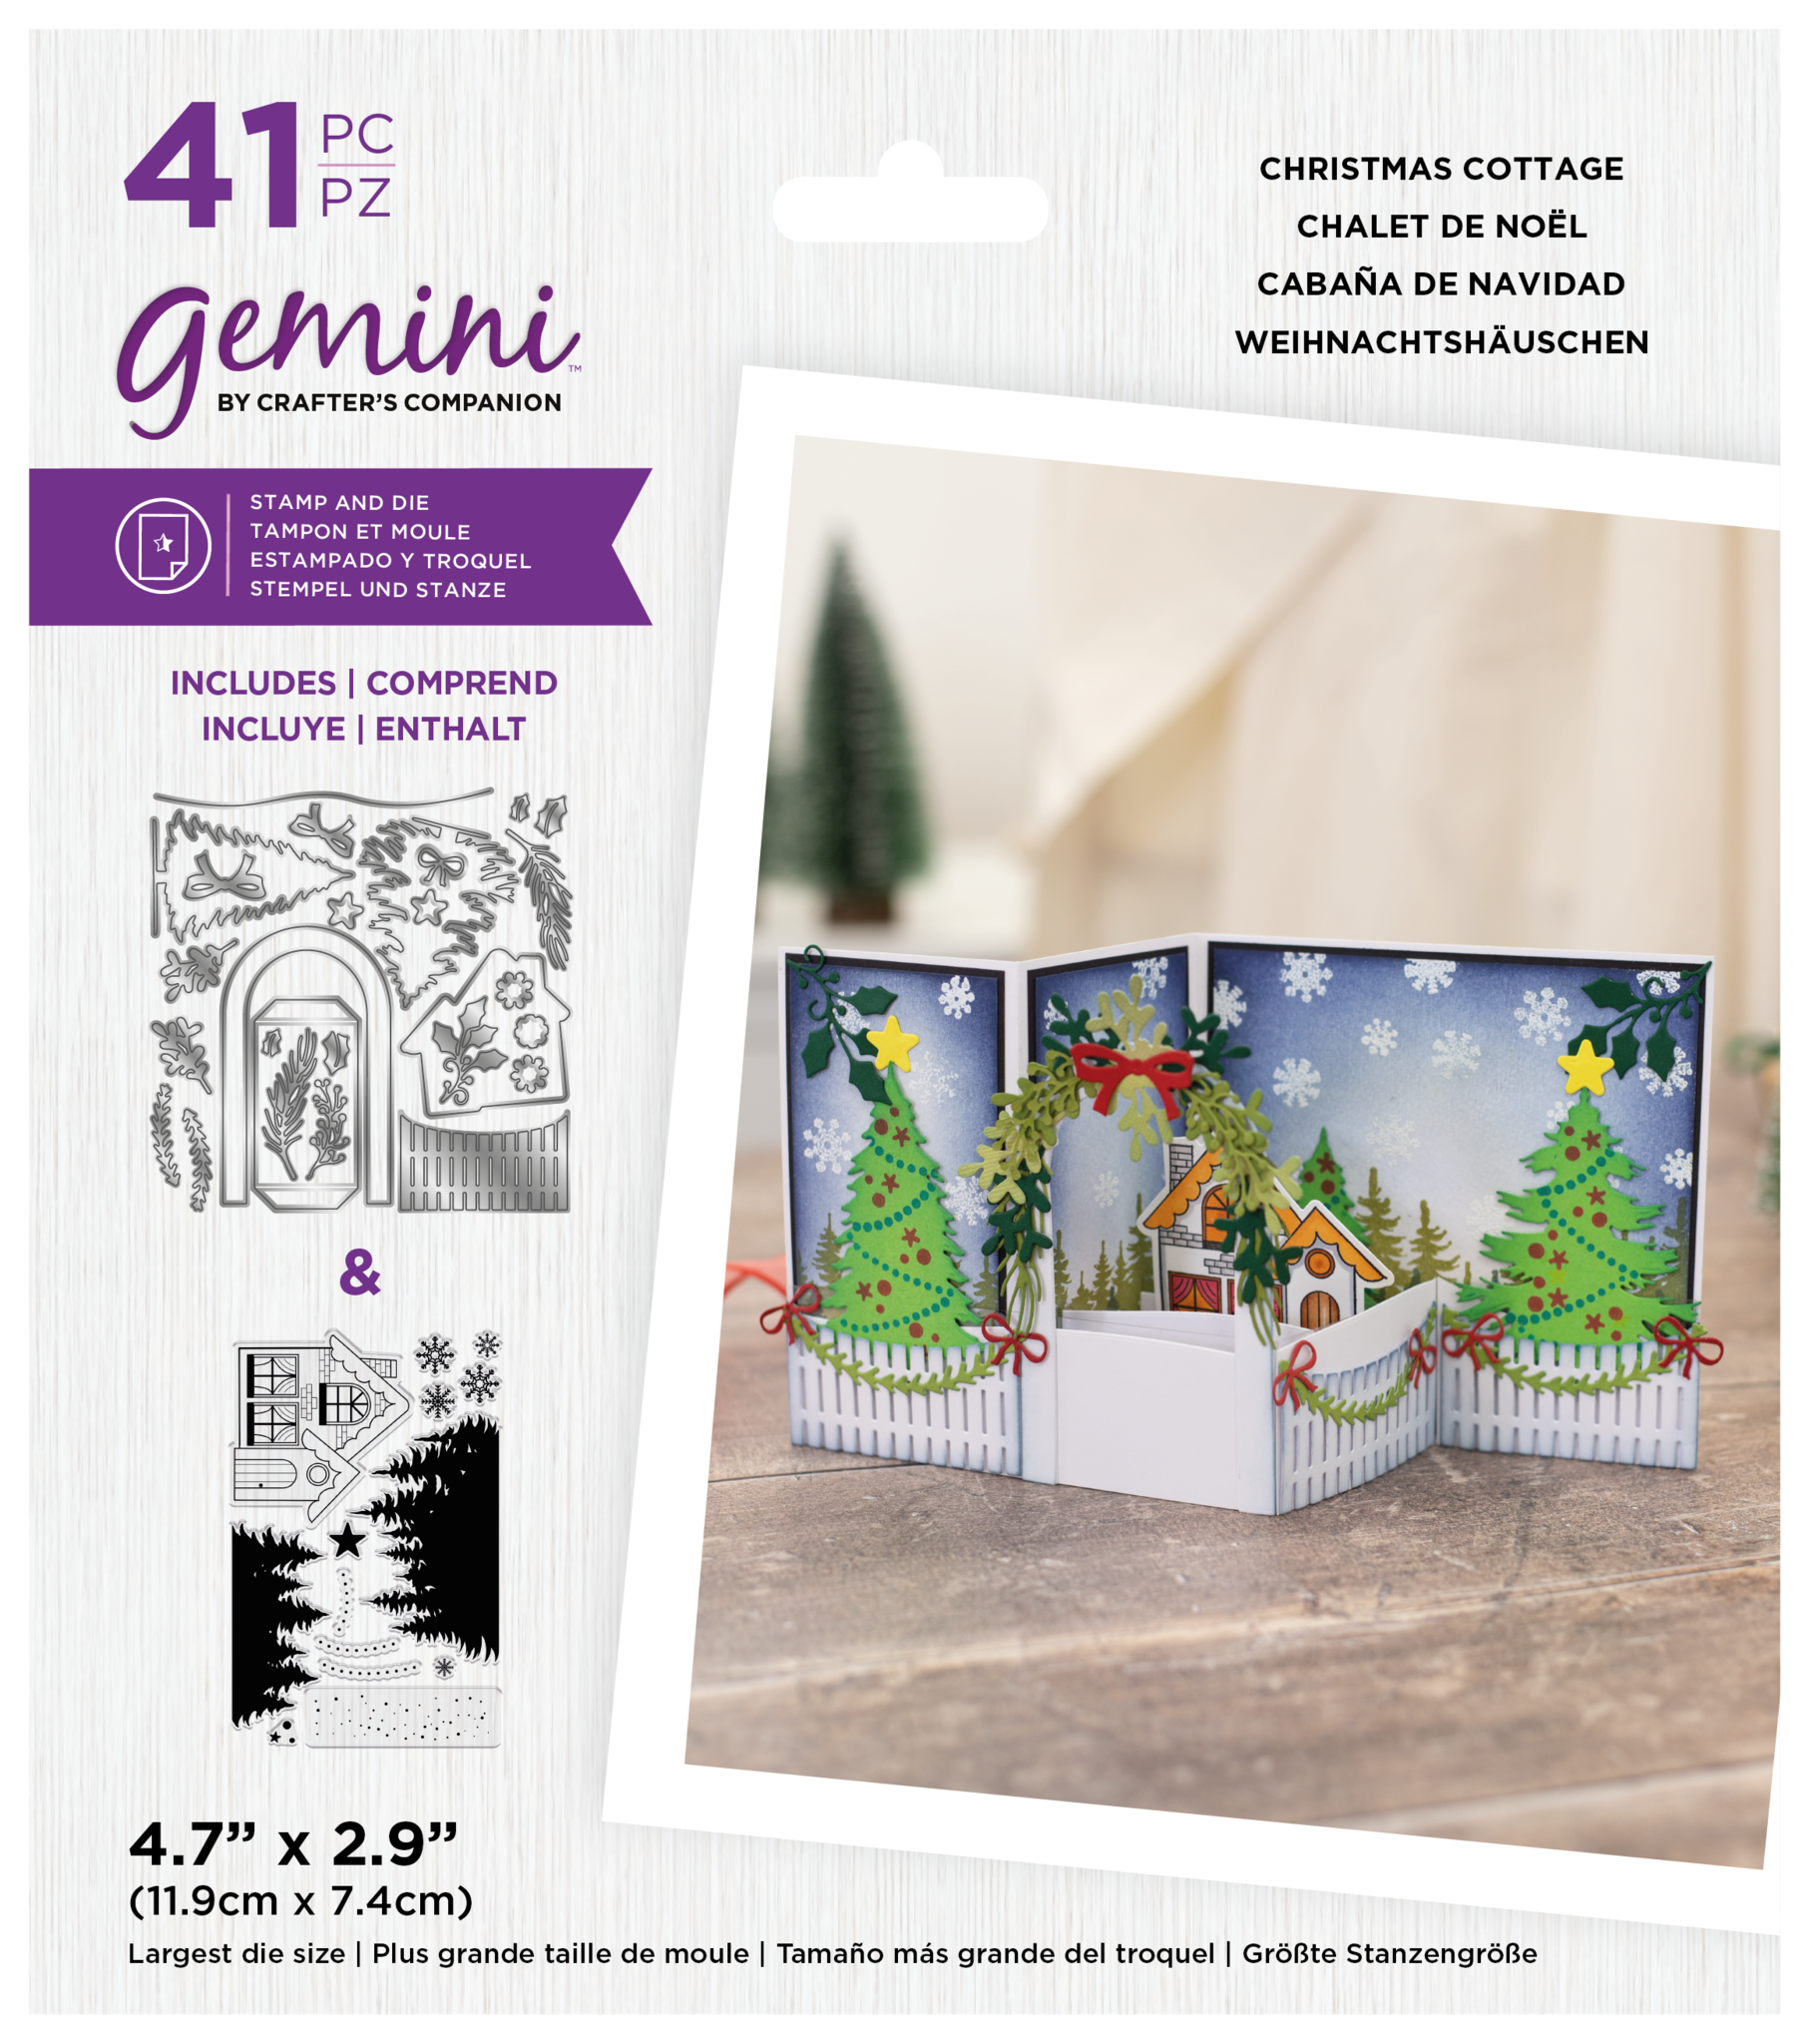 Gemini Soft Craft - Multi Media Dies - Cut N' Stitch Santa Claus - Crafts 4  Less